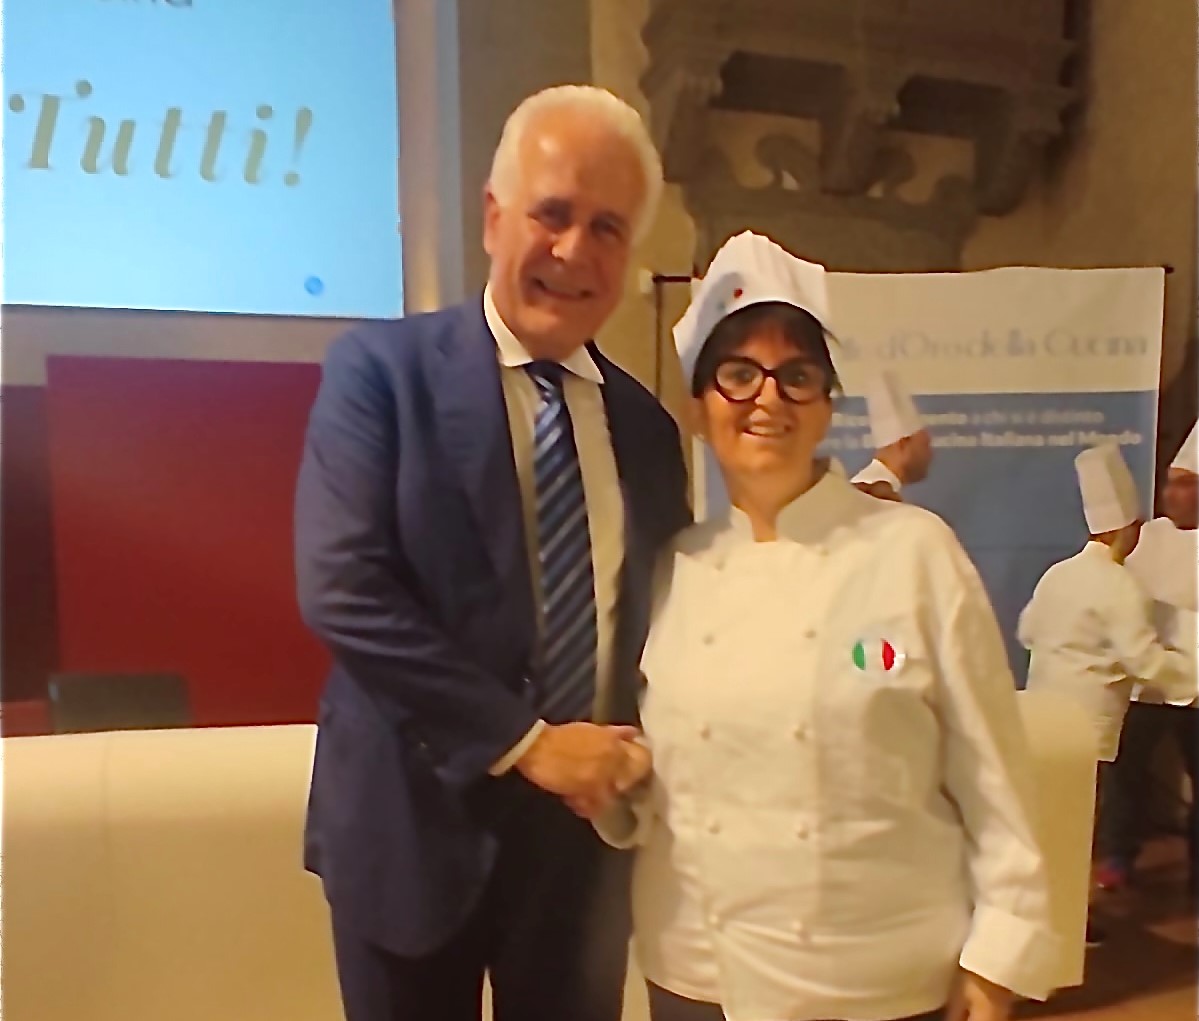 La chef di Talla Francesca Bartoli premiata a Firenze con il “5 Stelle d’Oro” per aver contribuito a diffondere la buona cucina nel mondo